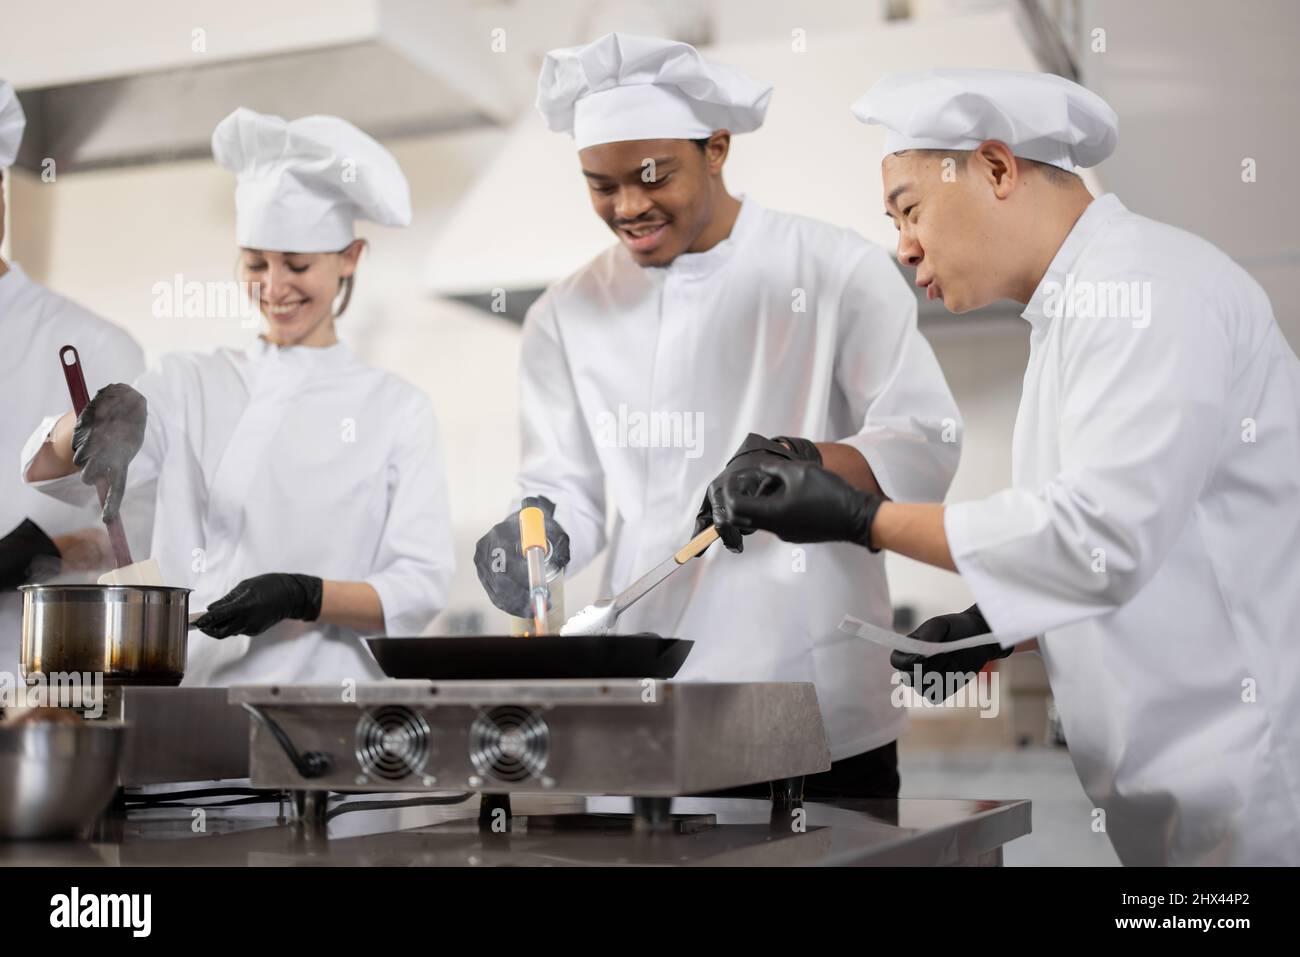 Équipe multiraciale de cuisiniers professionnels en uniforme préparant des  repas pour un restaurant dans la cuisine. Chef asiatique gérant le  processus, le type latin et les cuisiniers européens friture. Travail d' équipe et